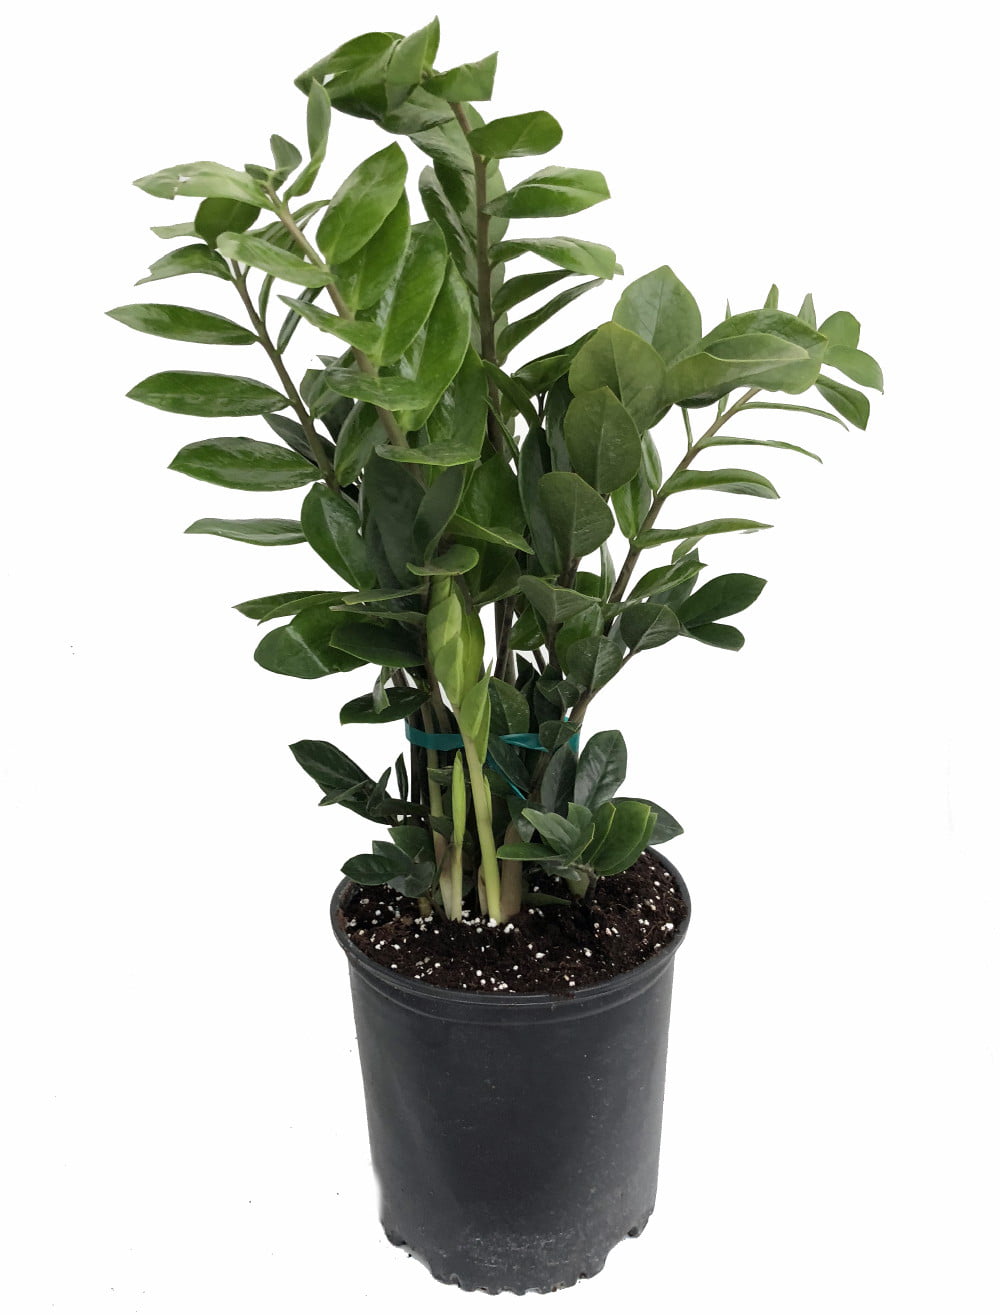 Rare ZZ Plant - Zamioculcas zamiifolia - Hardy House Plant - 8